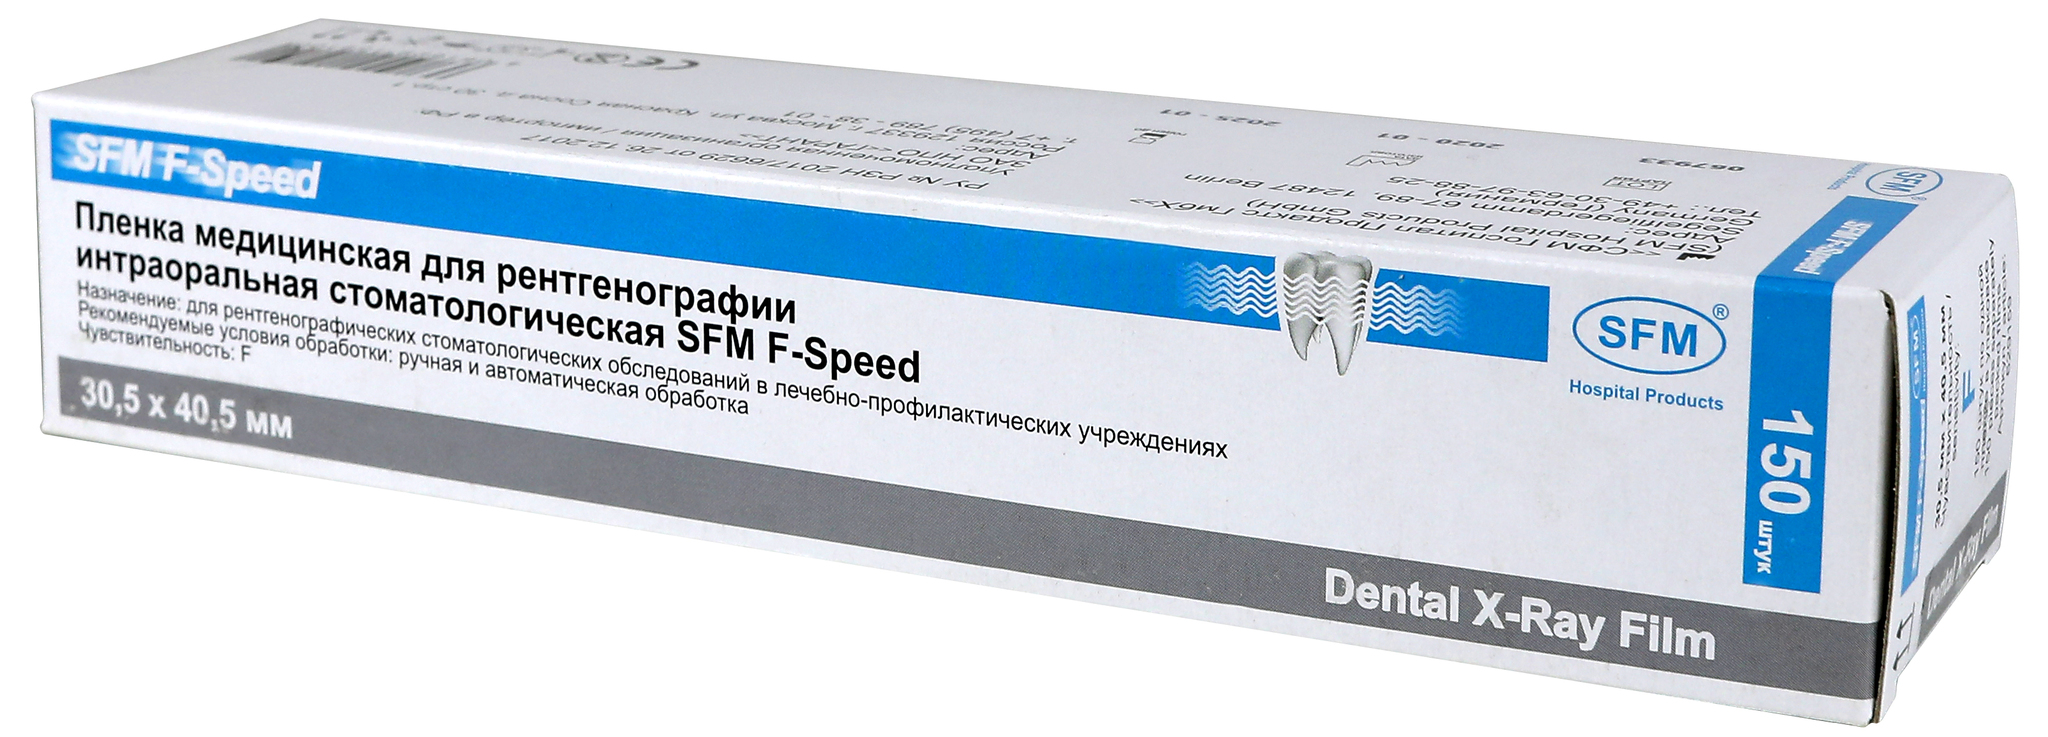 Пленка стоматологическая SFM F-Speed 30,5x40,5 мм